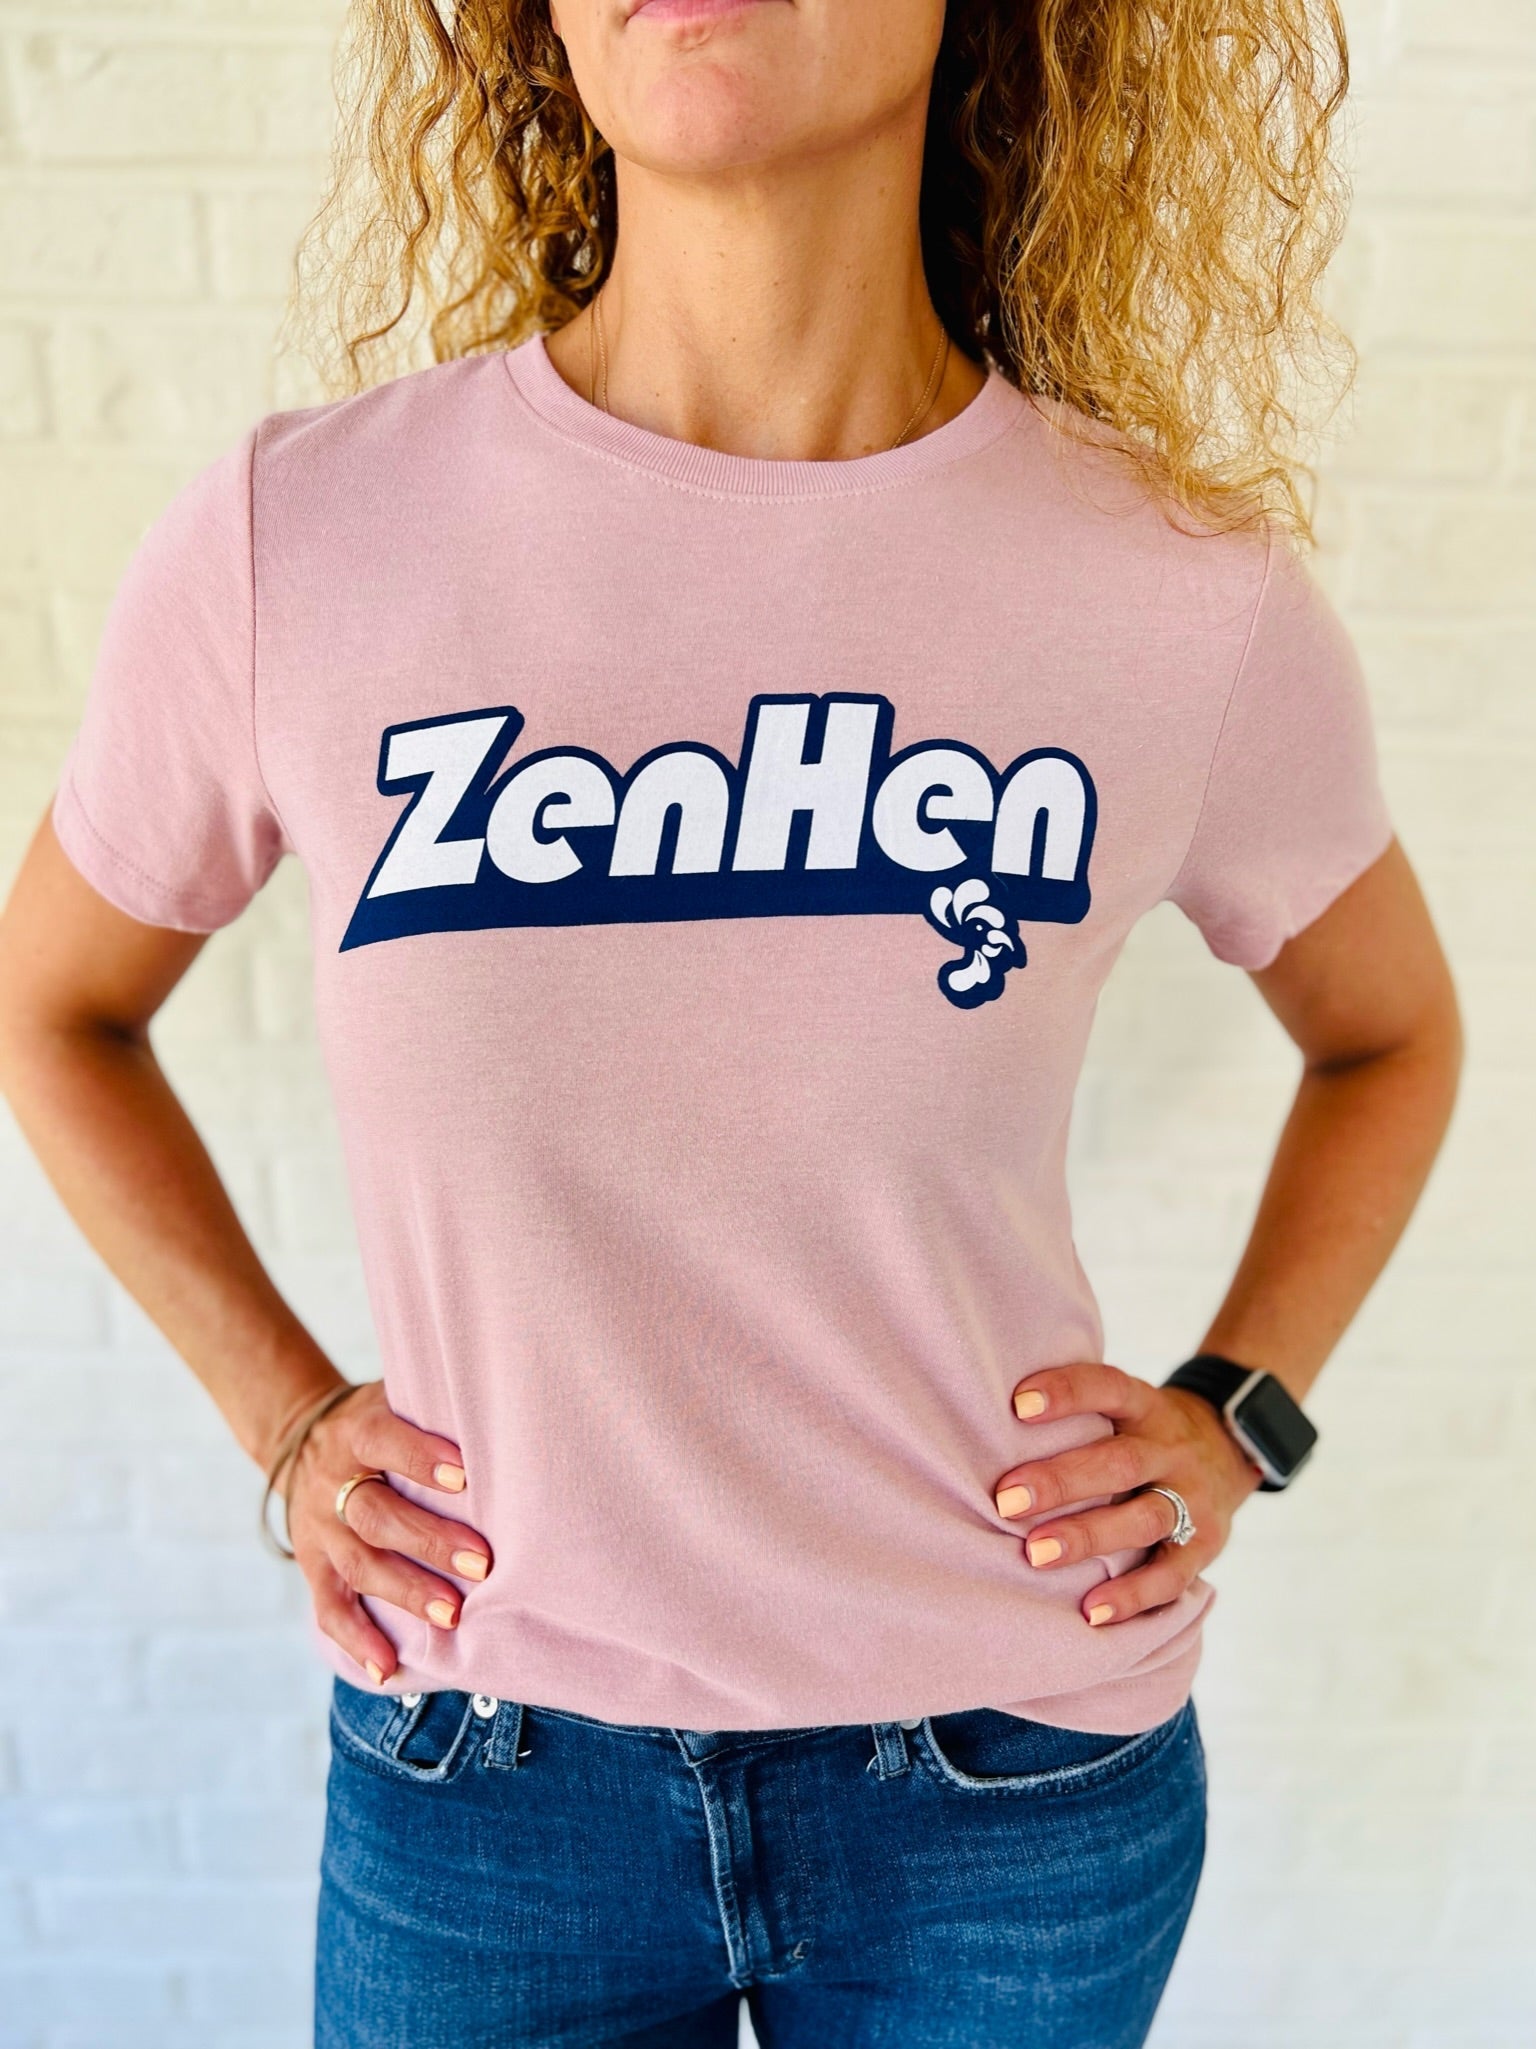 Zen Hen Limited Edition T-Shirt